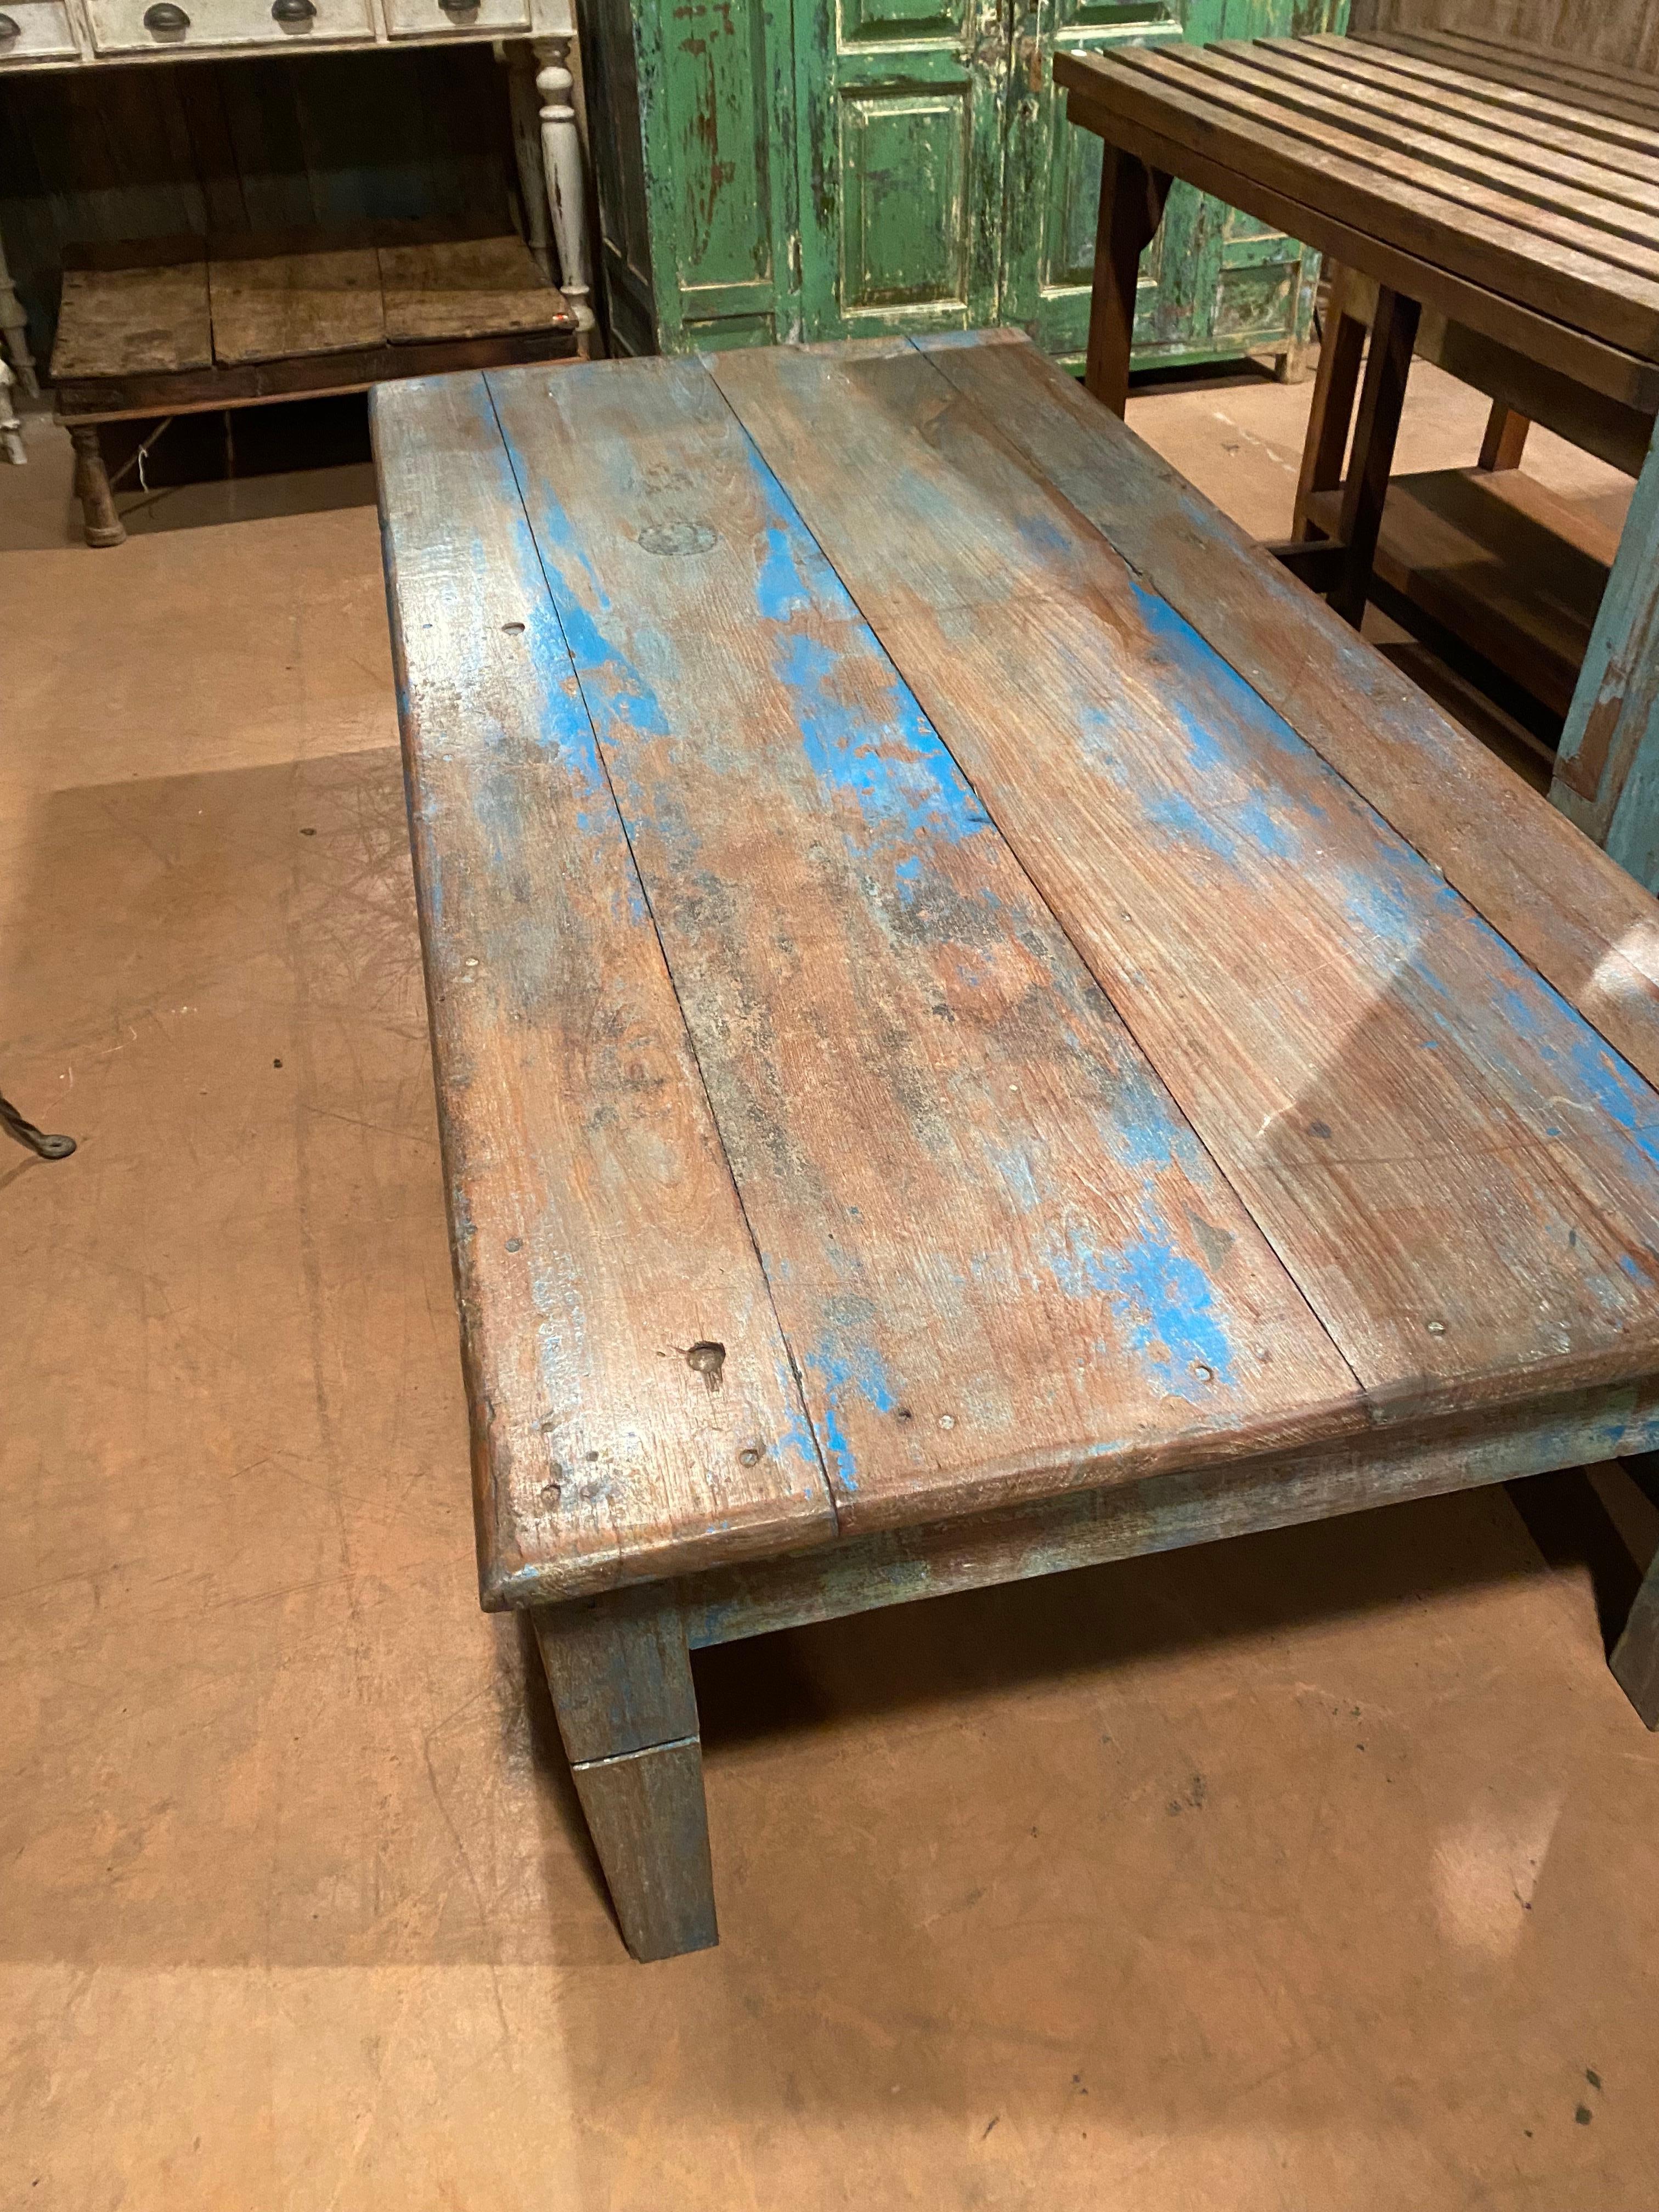 Délicieuse table à café indienne avec patine d'origine bleue. Il peut rester à l'extérieur car il est fabriqué en bois de teck.
Excellent état.